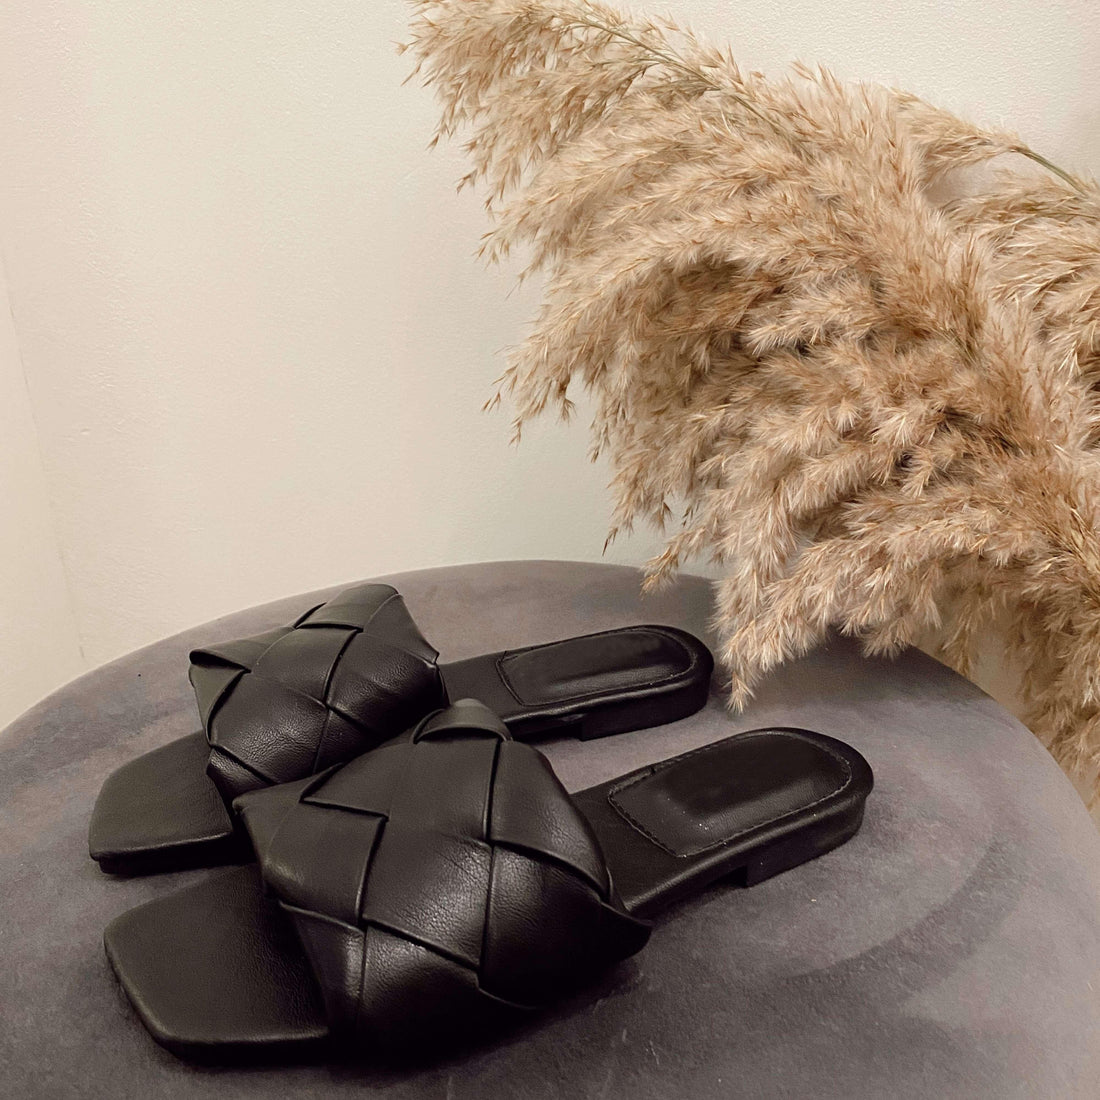 Zwarte slippers met gevlochten detail. Bottega Venete inspired. De slippers vallen normaal op maat en zijn gemaakt van PU vegan leather.